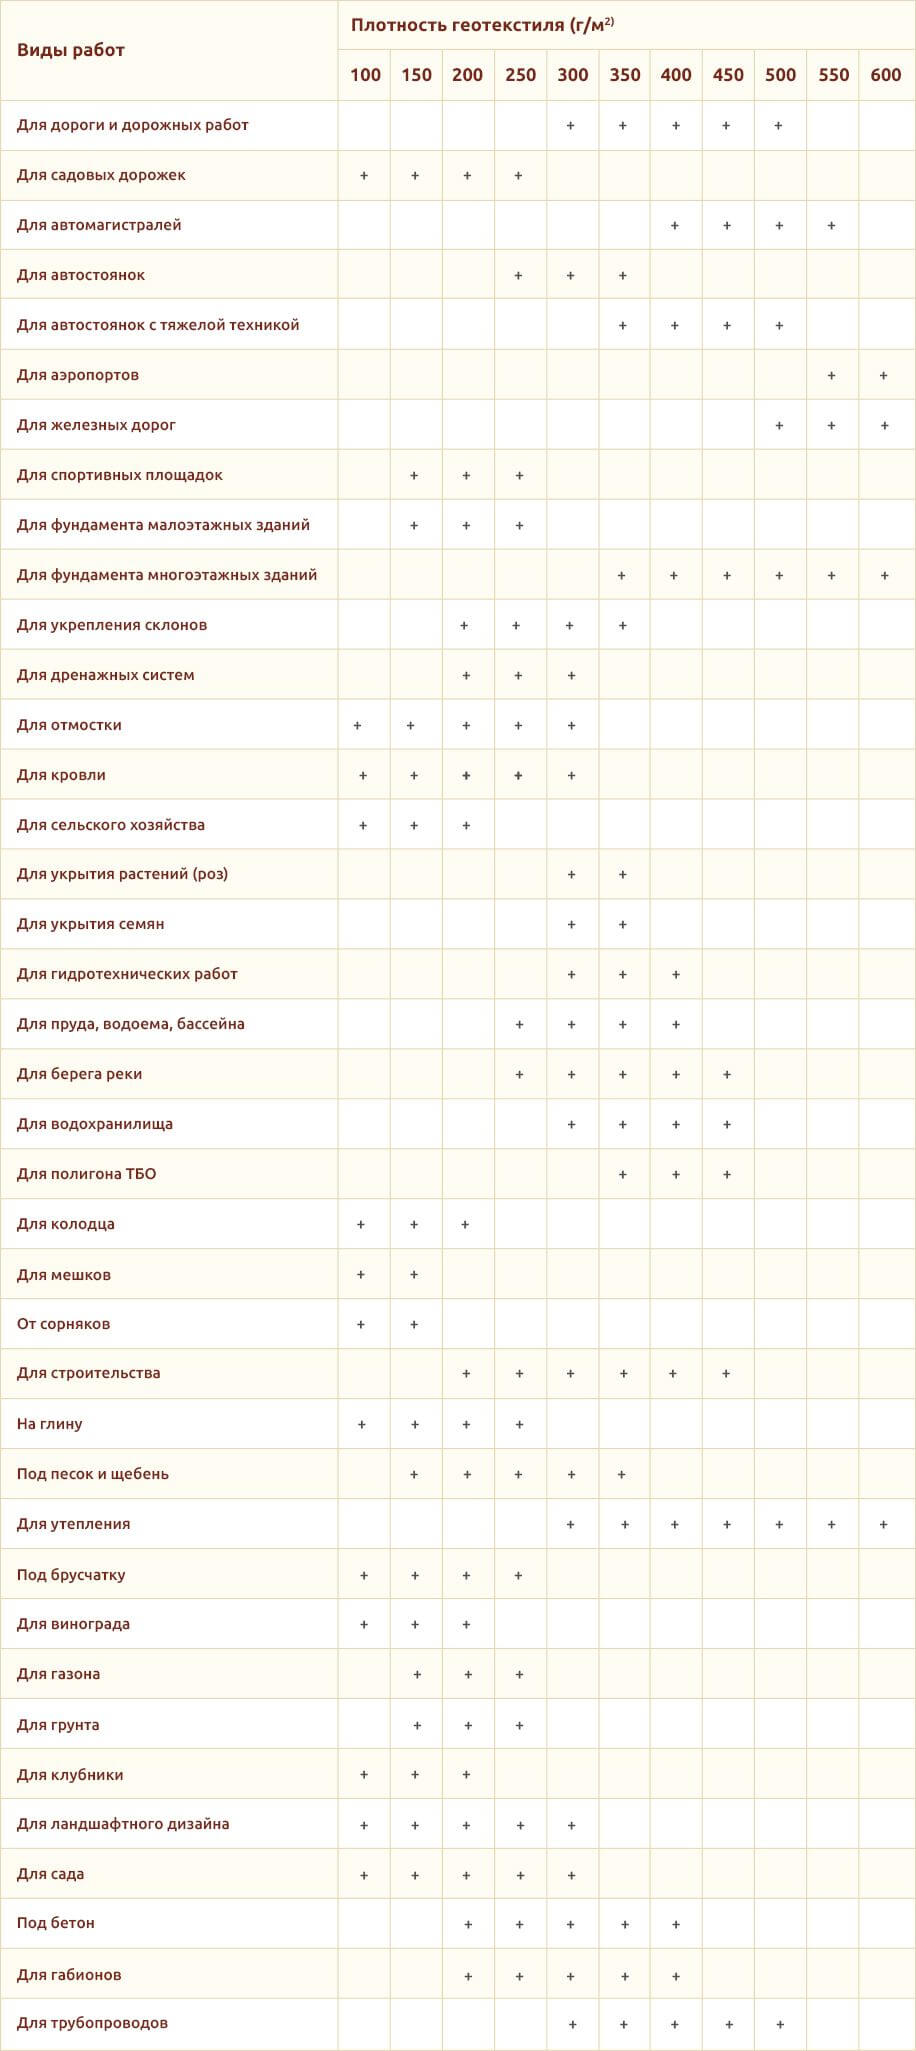 Таблица: Сфера применения геотекстиля в зависимости от плотности